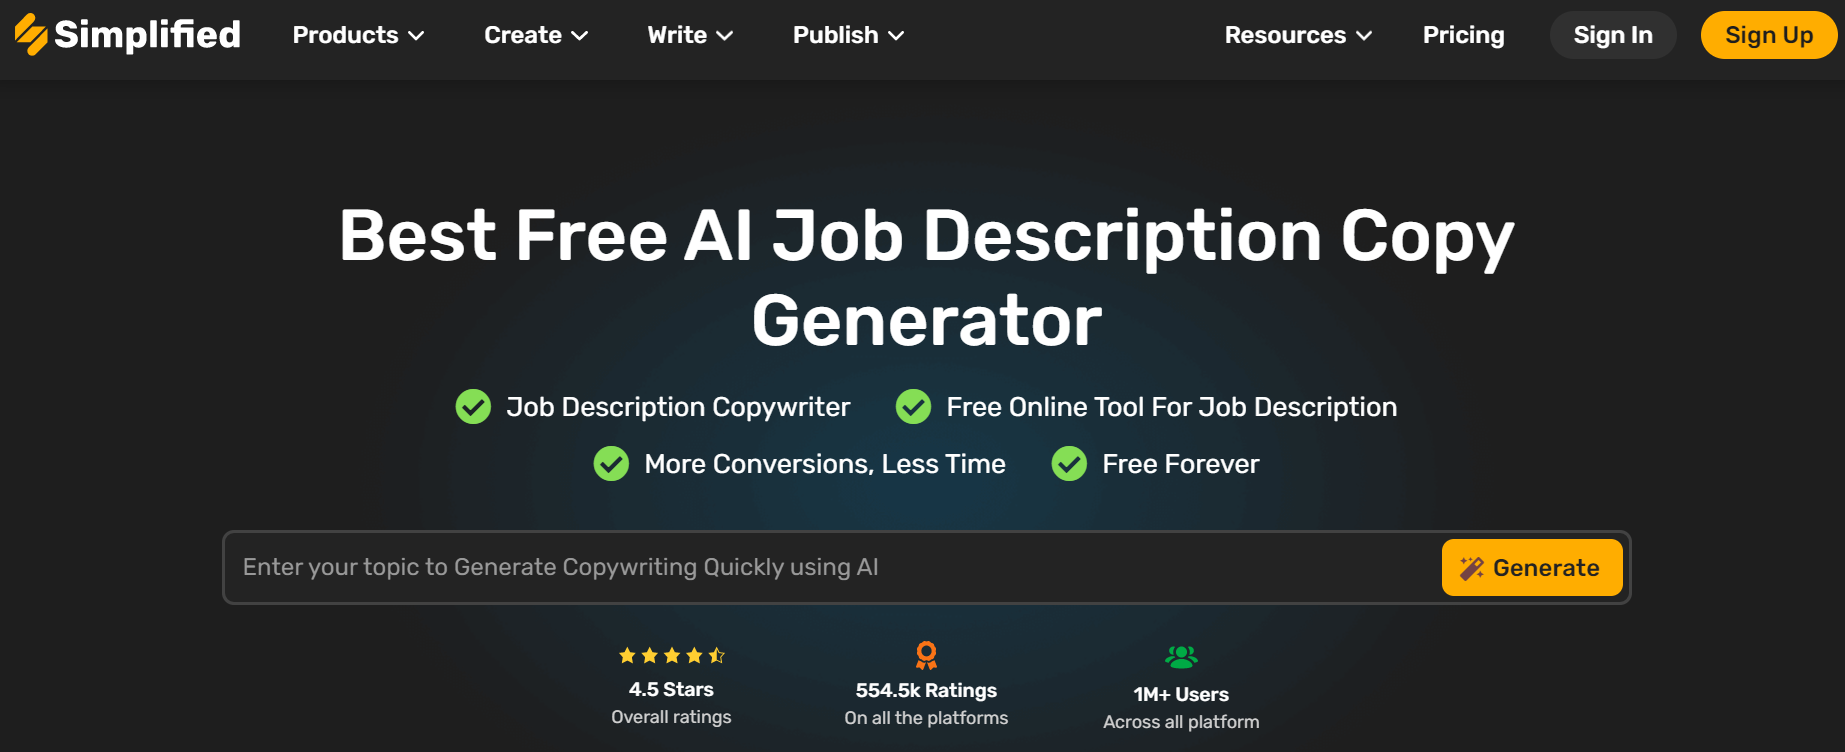 simplified job description copy generator